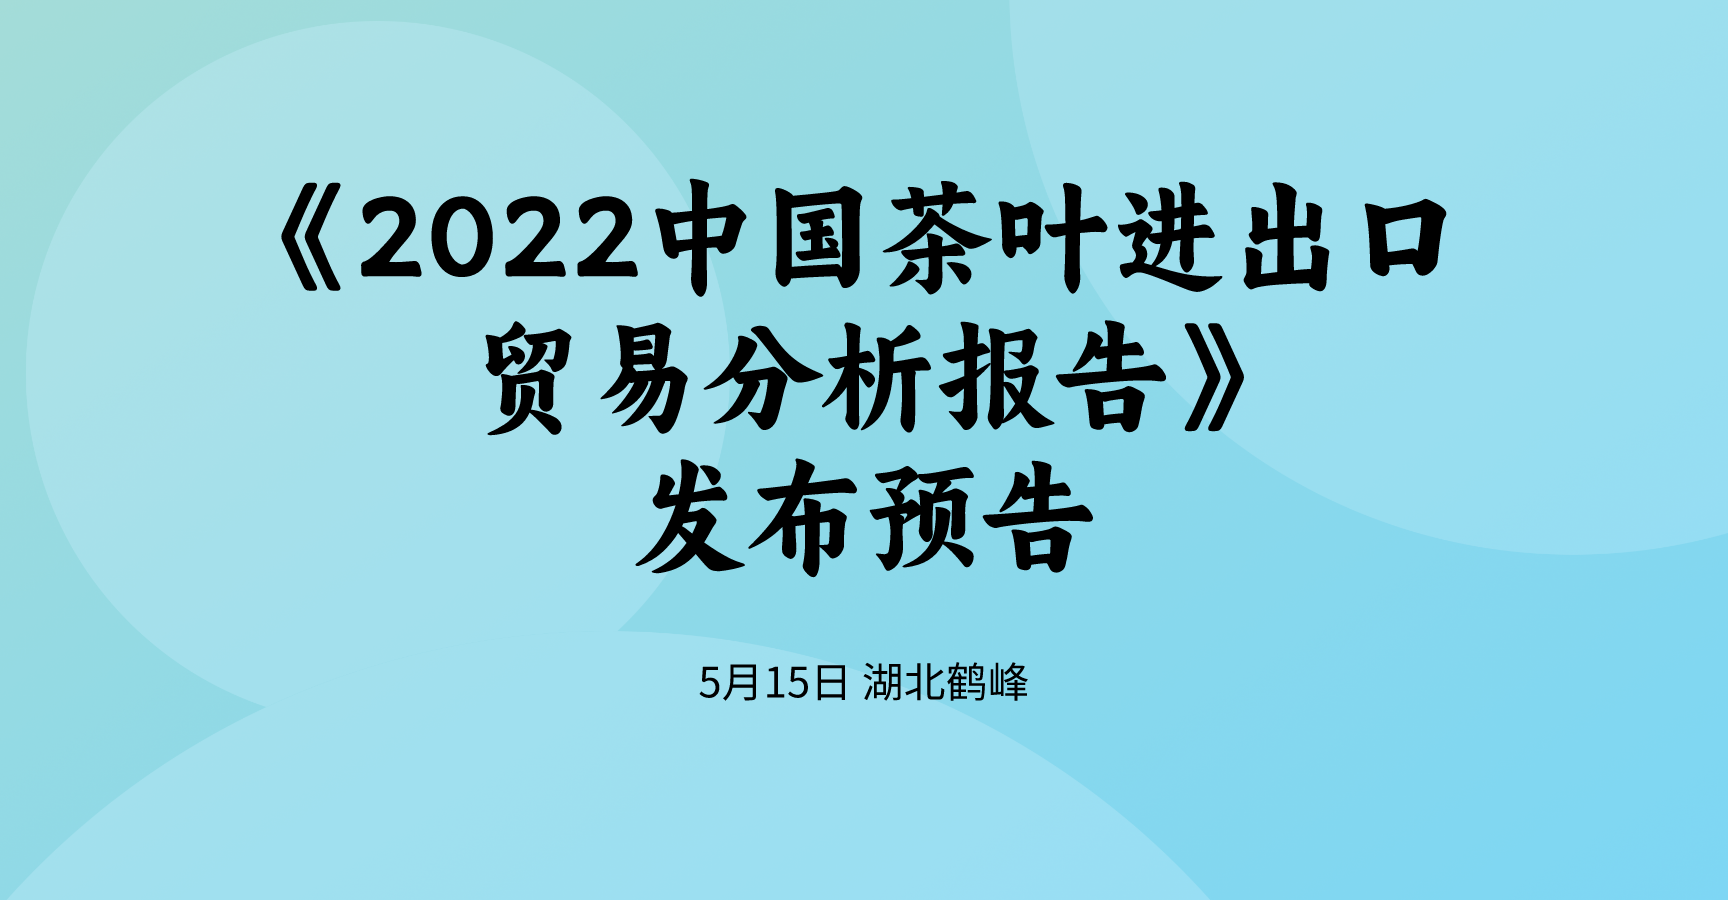 《2022中国茶叶进出口贸易分析报告》将于5月15日在湖北鹤峰发布！多维度全数据揭示2022茶叶进出口情况！